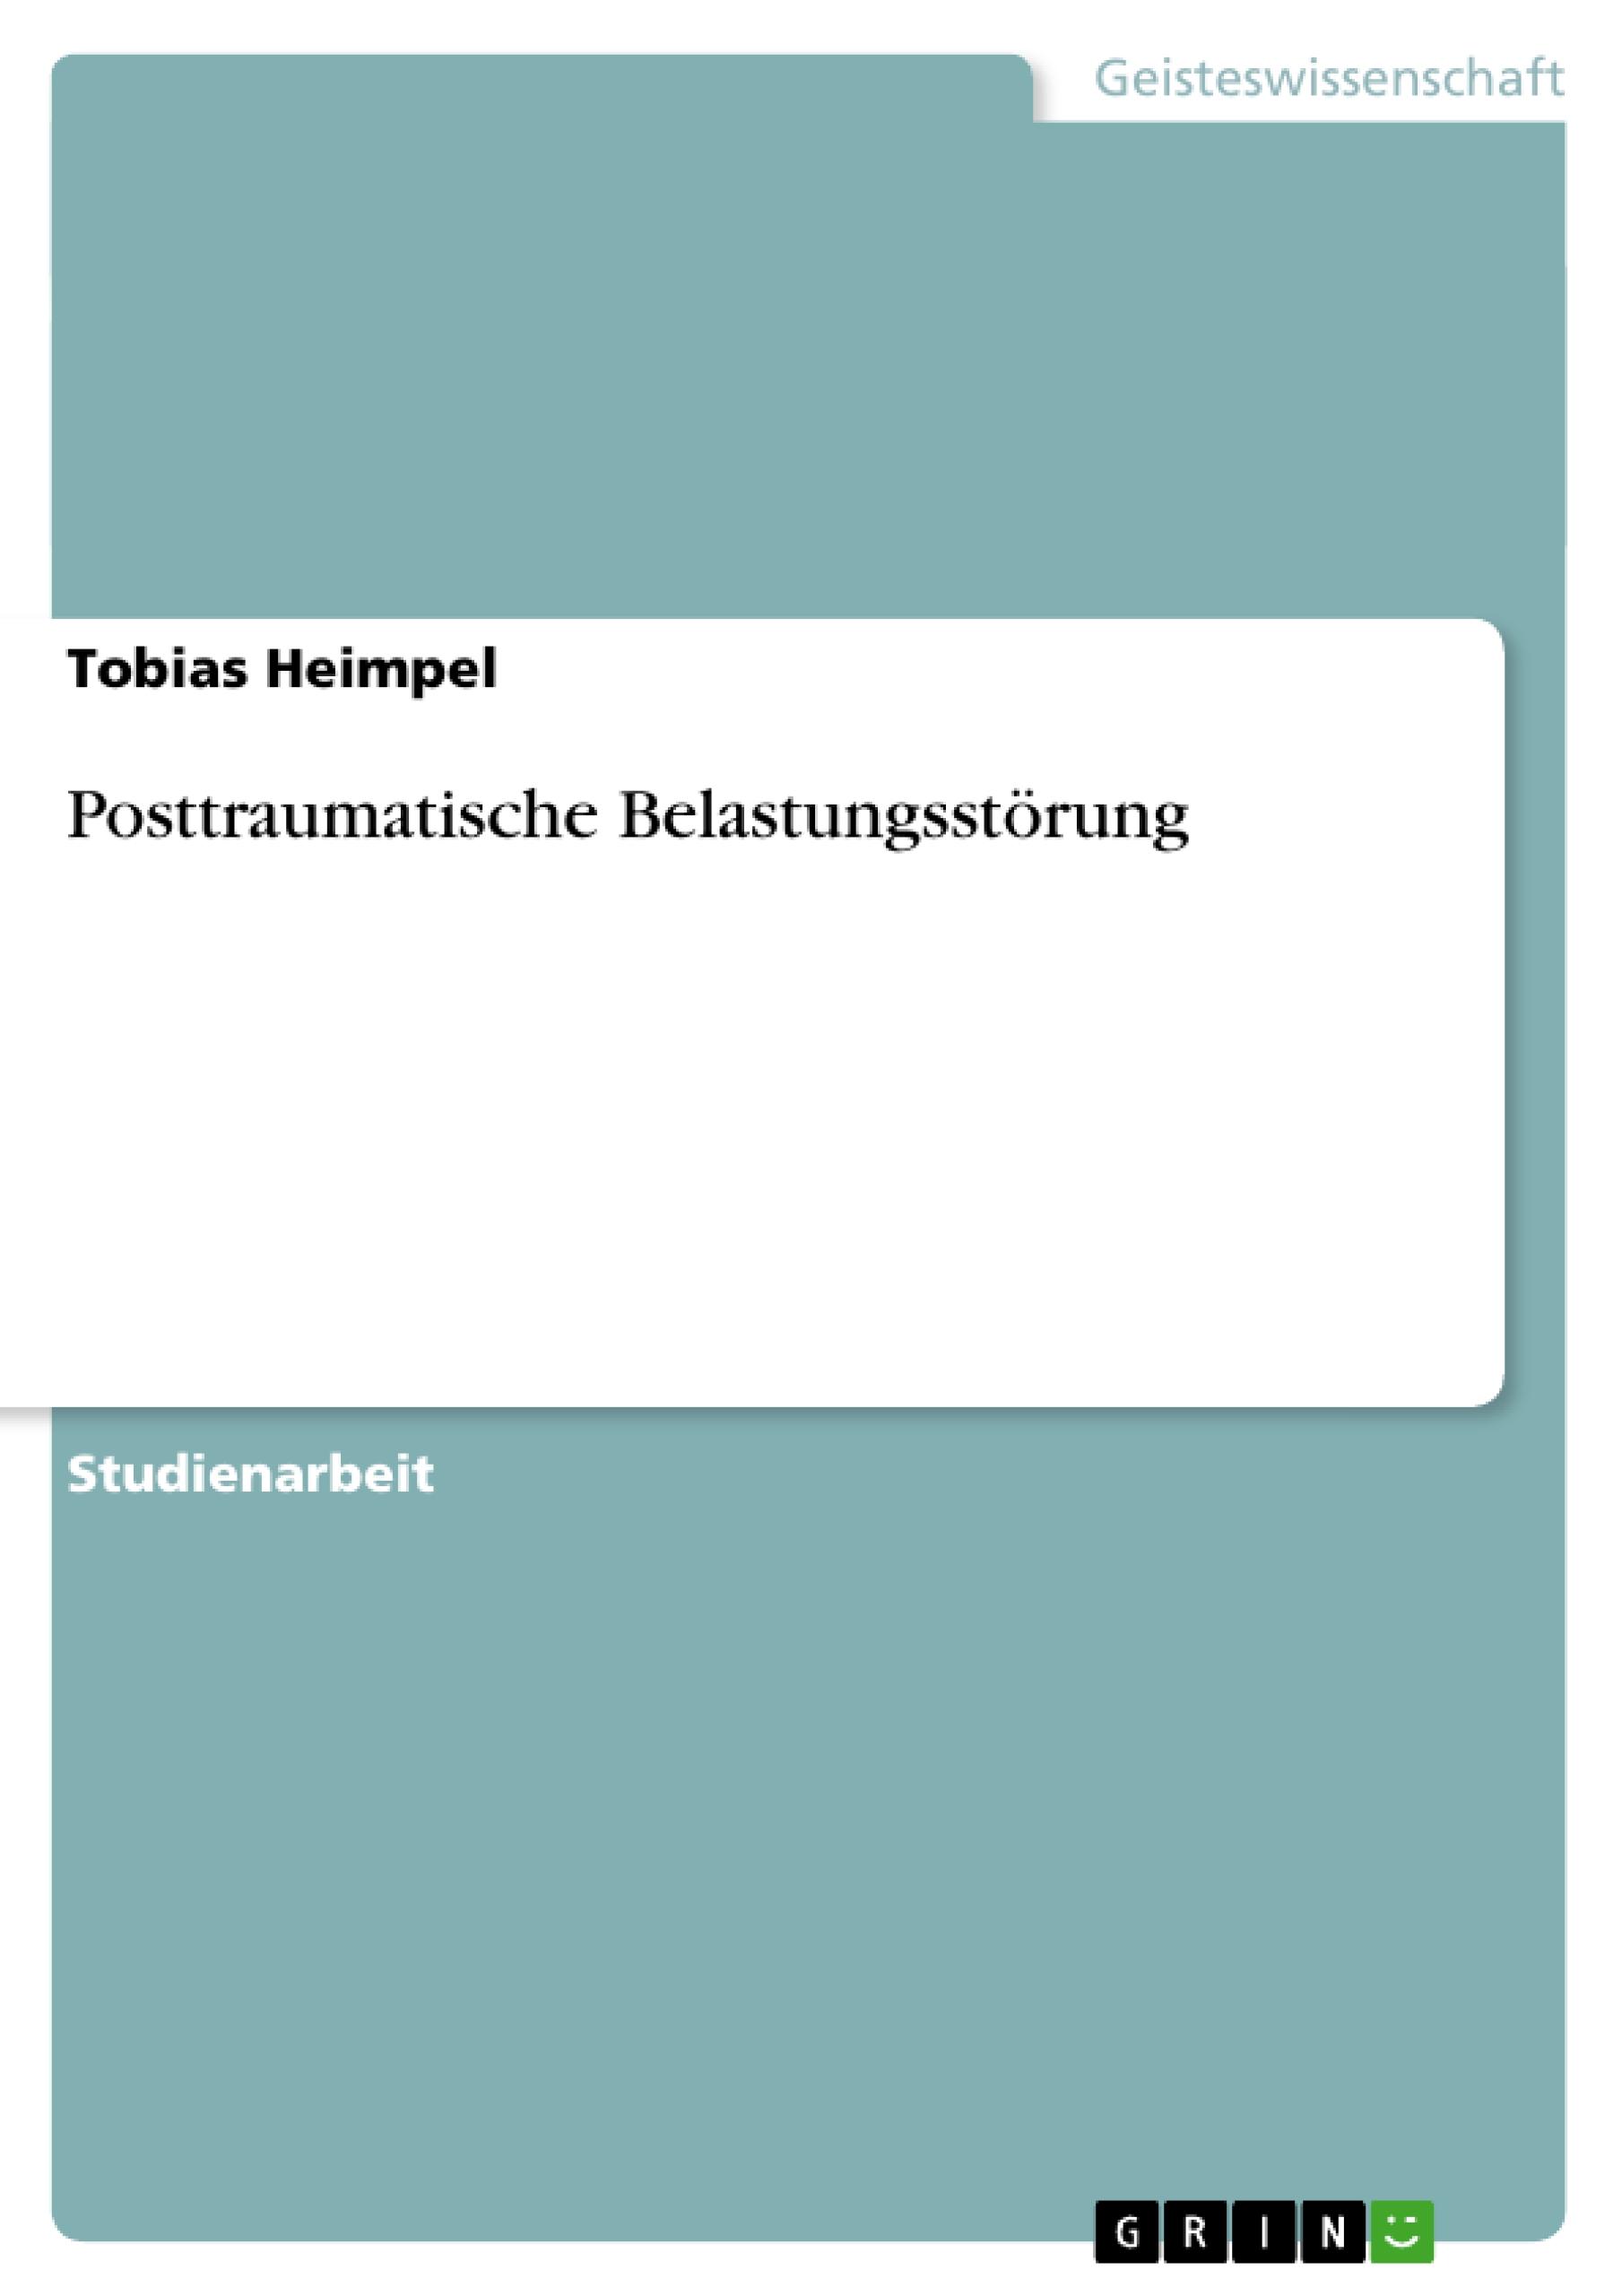 Posttraumatische Belastungsstörung  Tobias Heimpel  Taschenbuch  Akademische Schriftenreihe Bd. V159337  Booklet  Deutsch  2010  GRIN Verlag  EAN 9783640719662 - Heimpel, Tobias